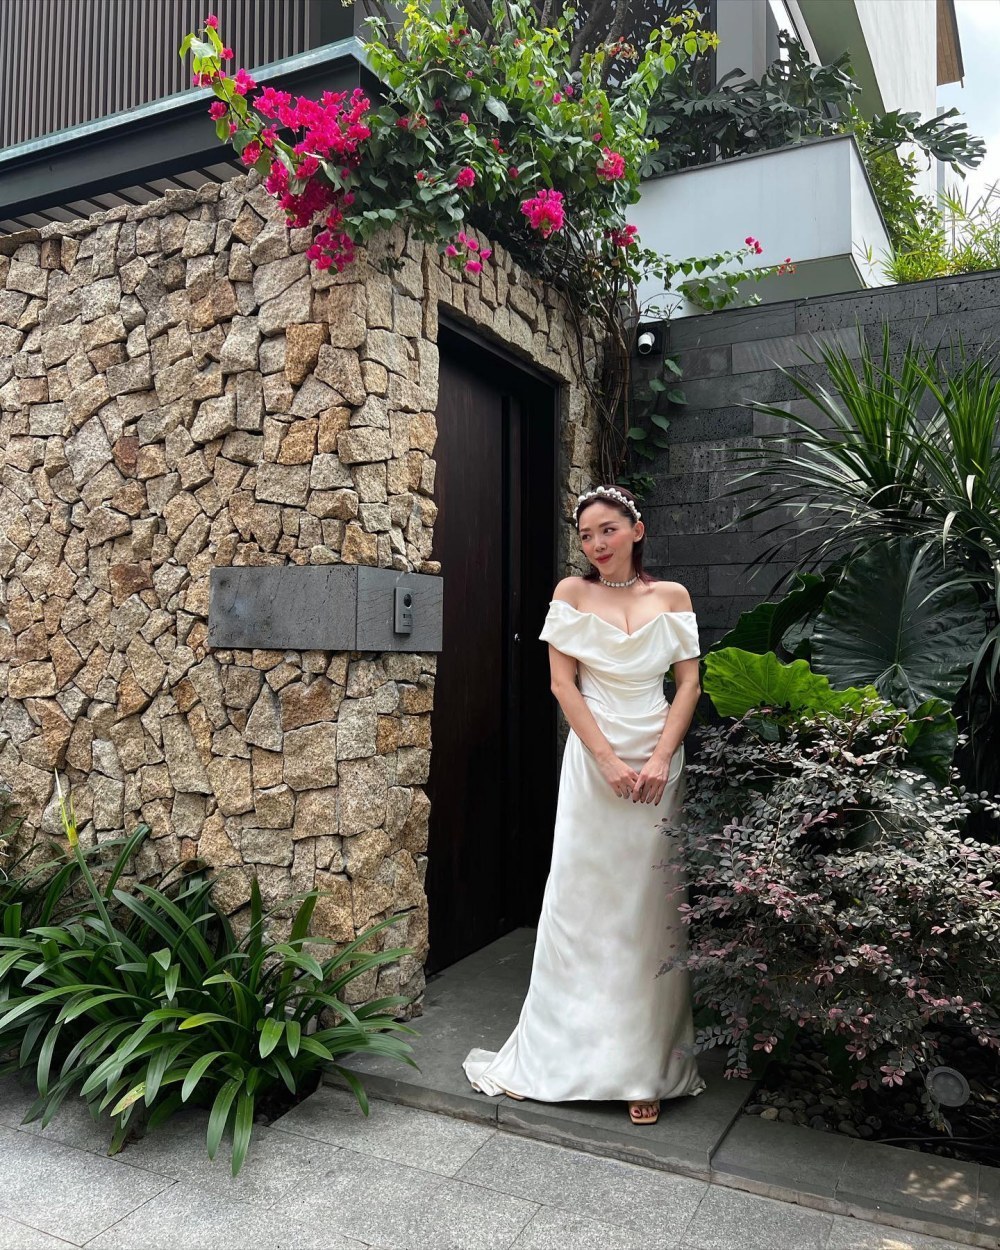  
Chiếc váy cưới nhiều kỷ niệm và được Tóc Tiên trân trọng. (Ảnh: FB Nguyễn Khoa Tóc Tiên)